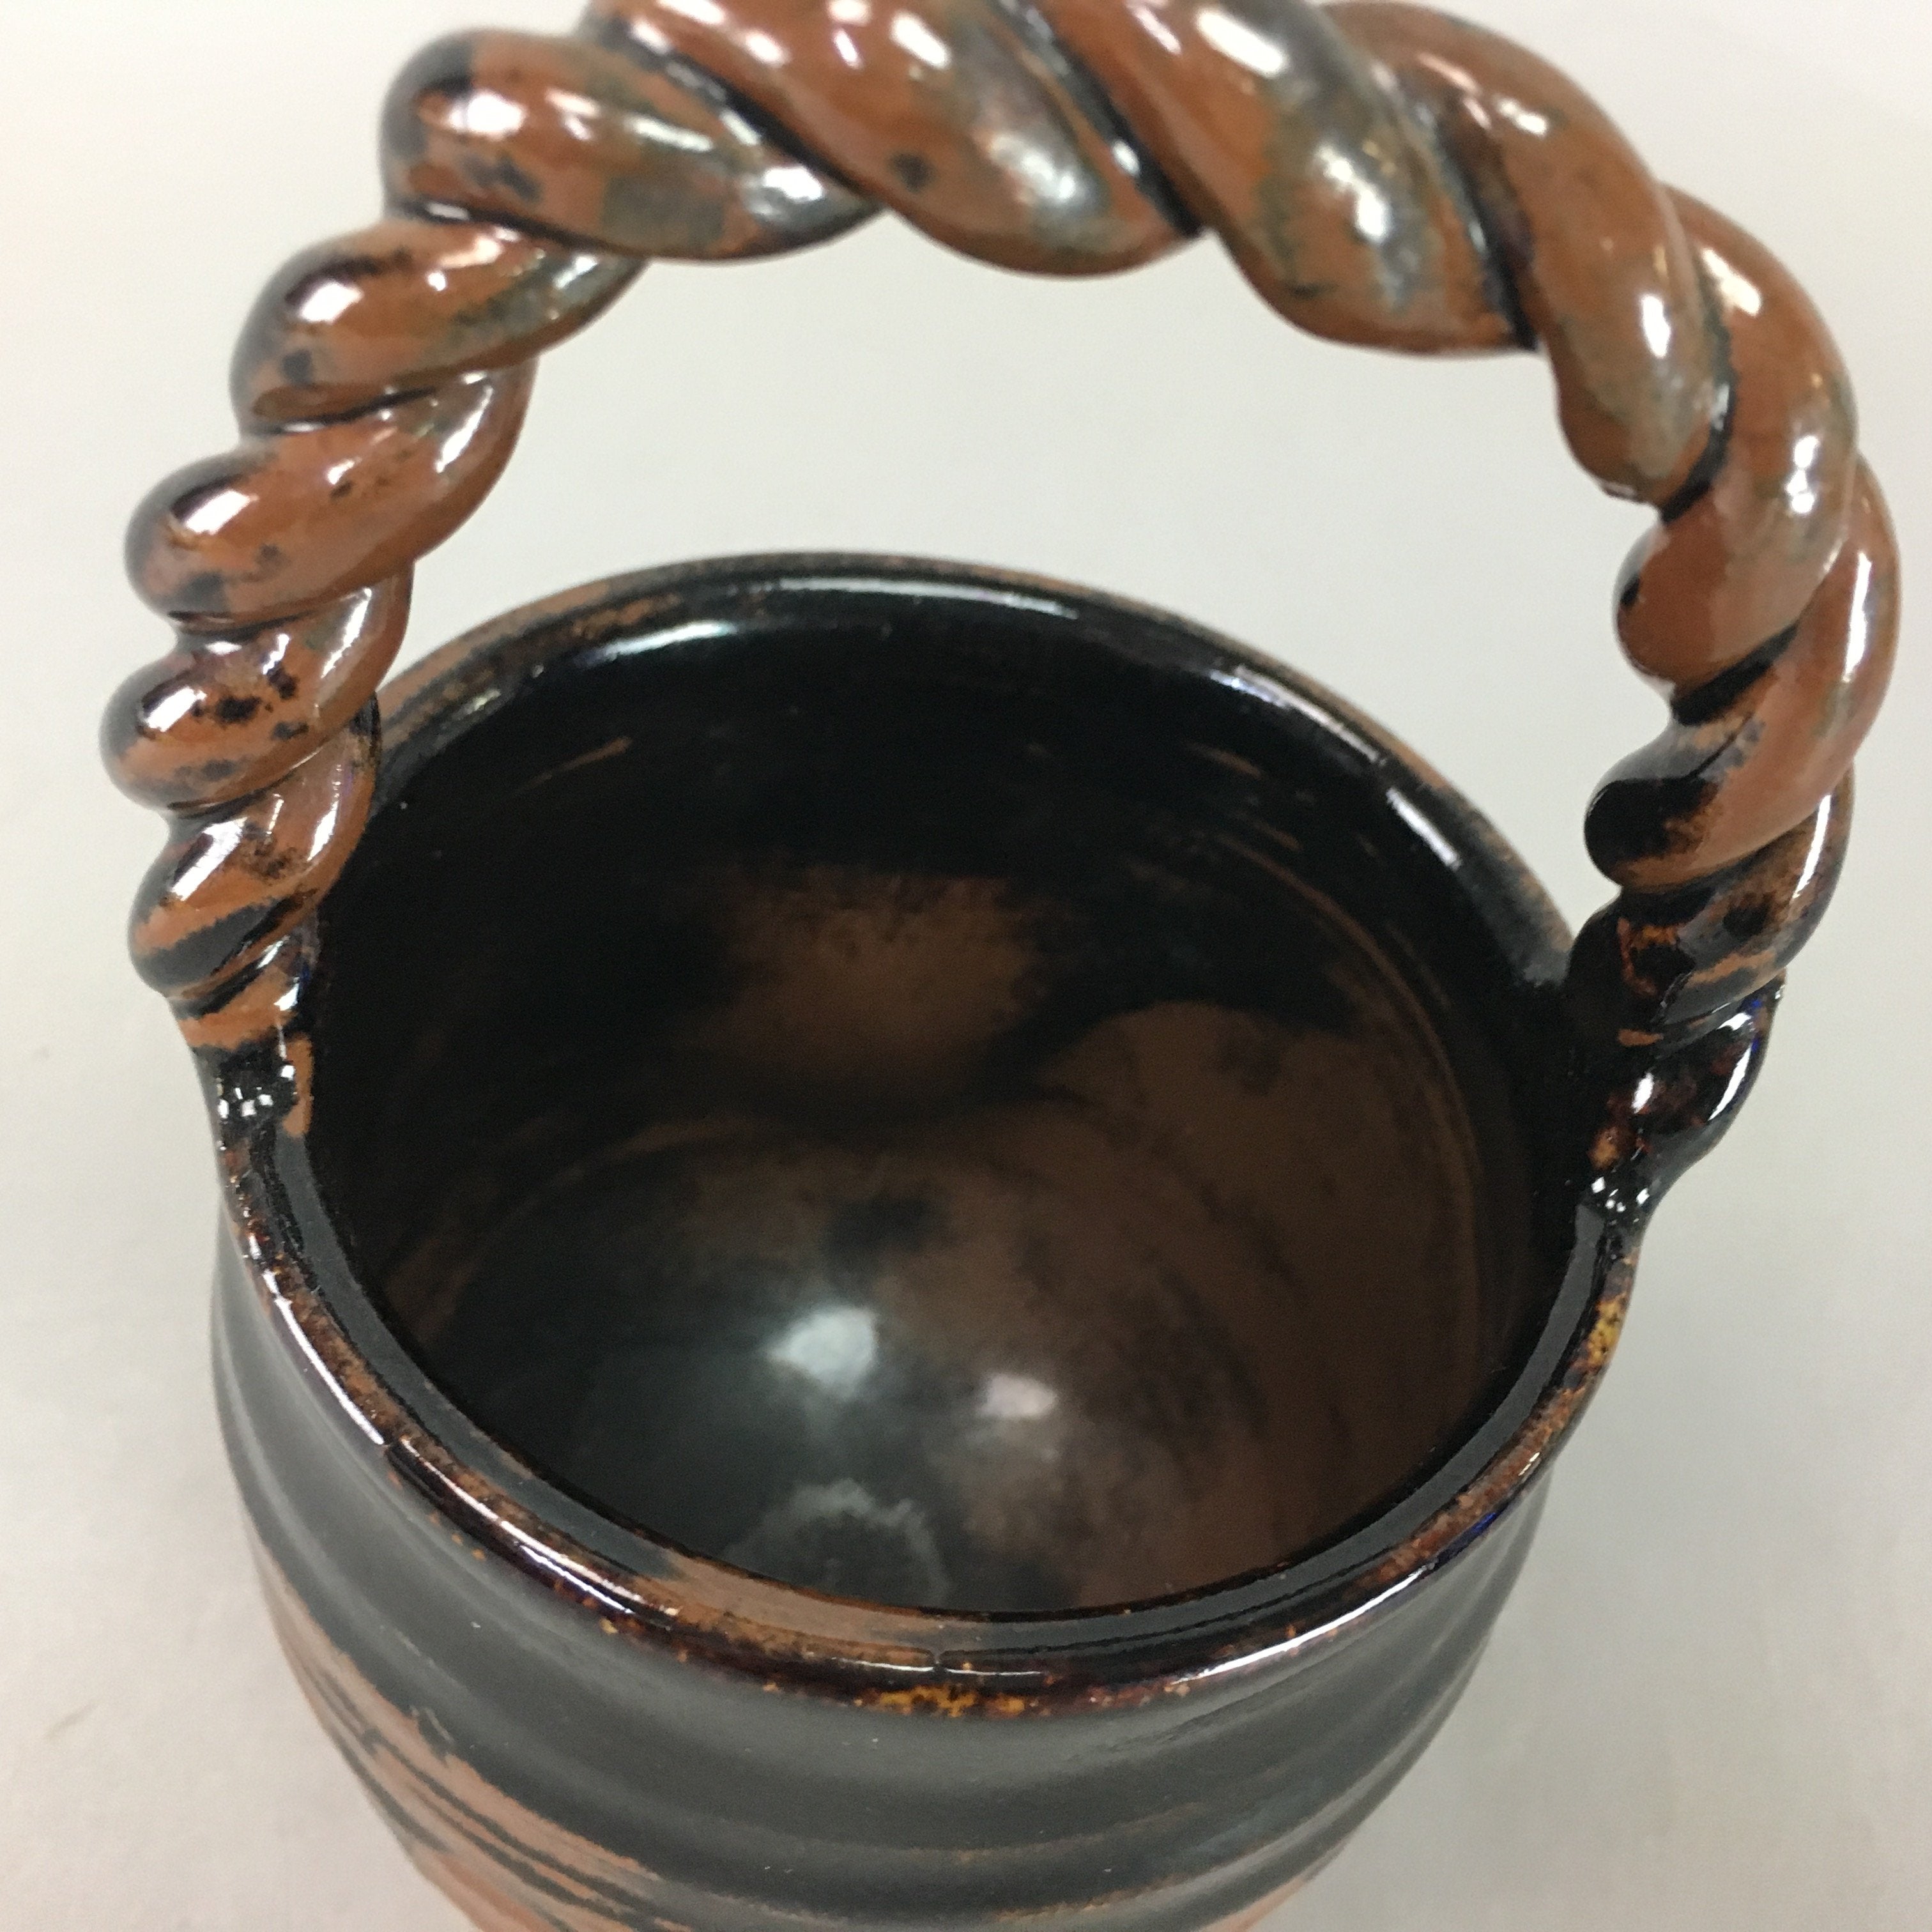 Japanese Flower Vase Ikebana Kabin Small Brown Handle Vtg Pottery MFV59